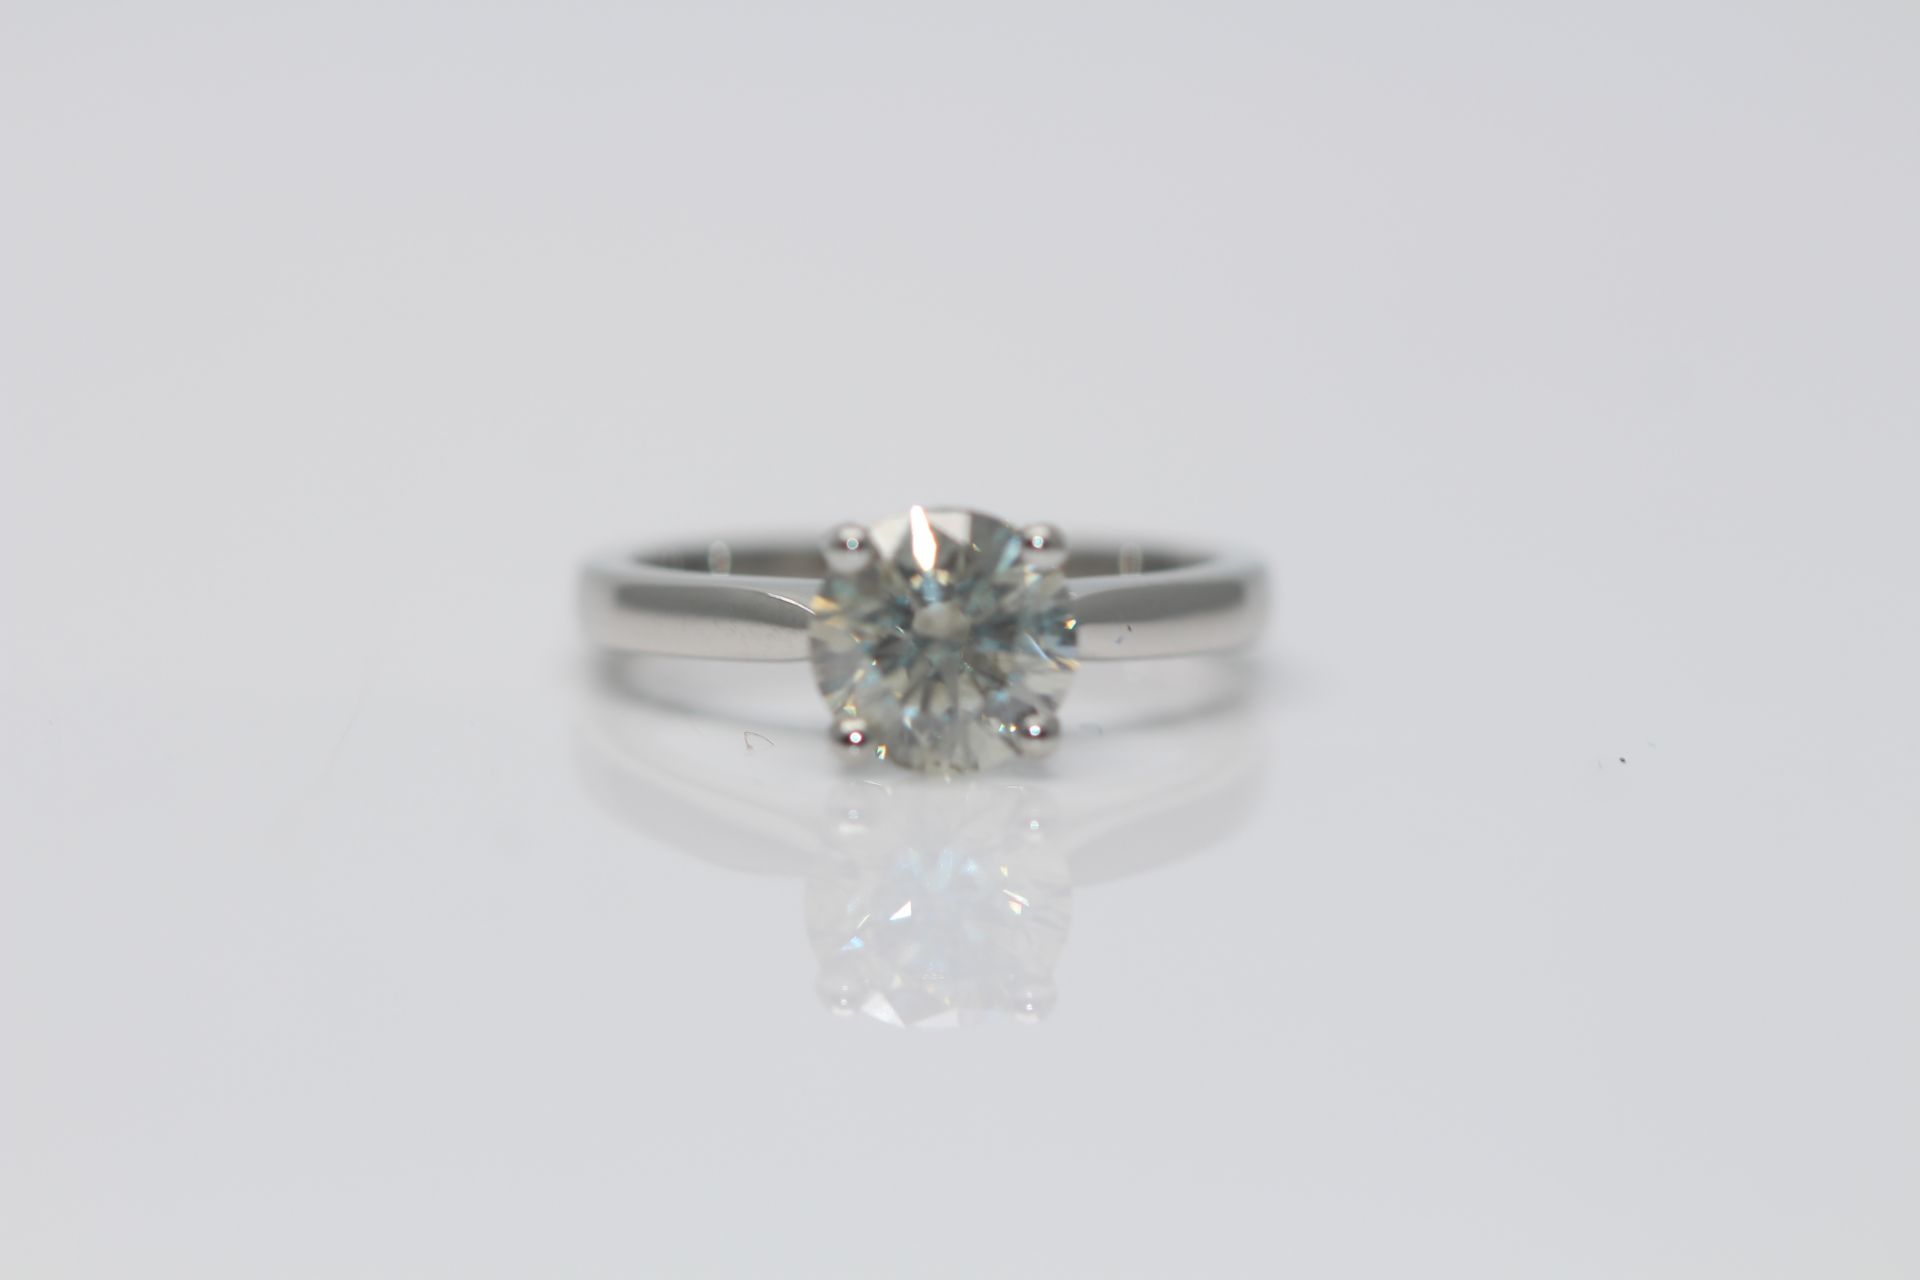 Platinum Ladies Diamond Ring, Set with one 1.53 Carat Brilliant cut diamond solitaire